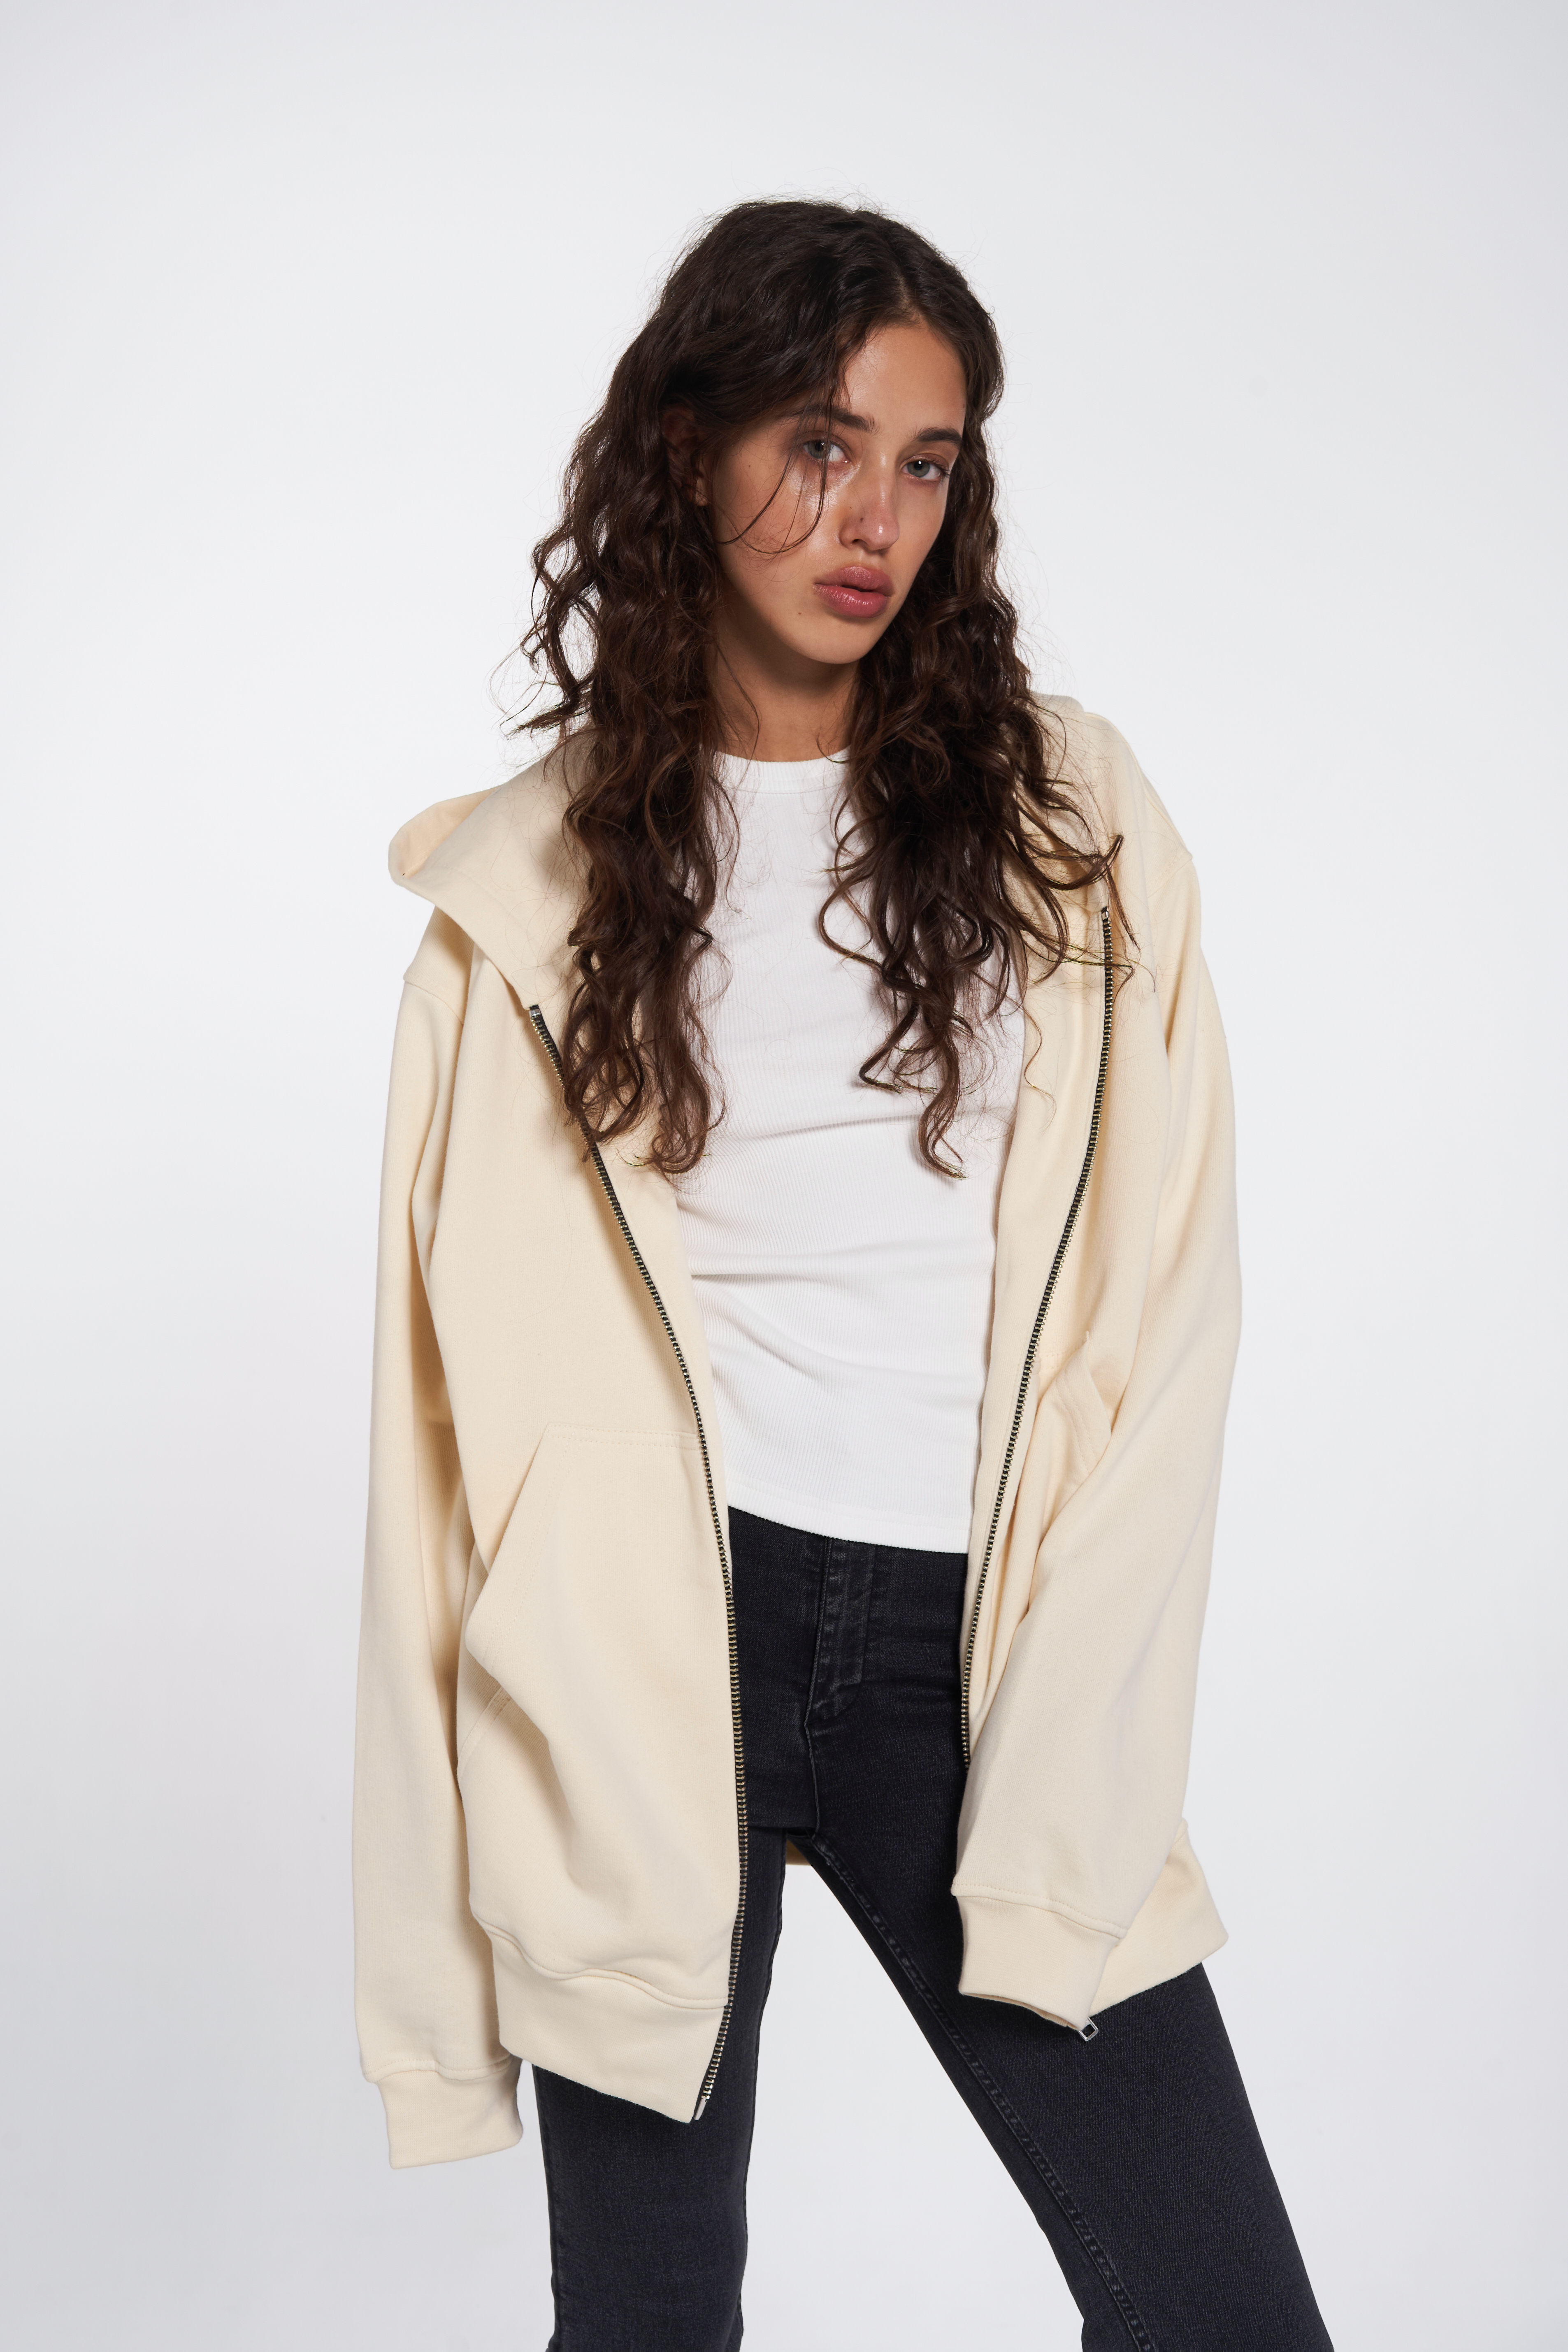 zip-up hoodie in vanilla color